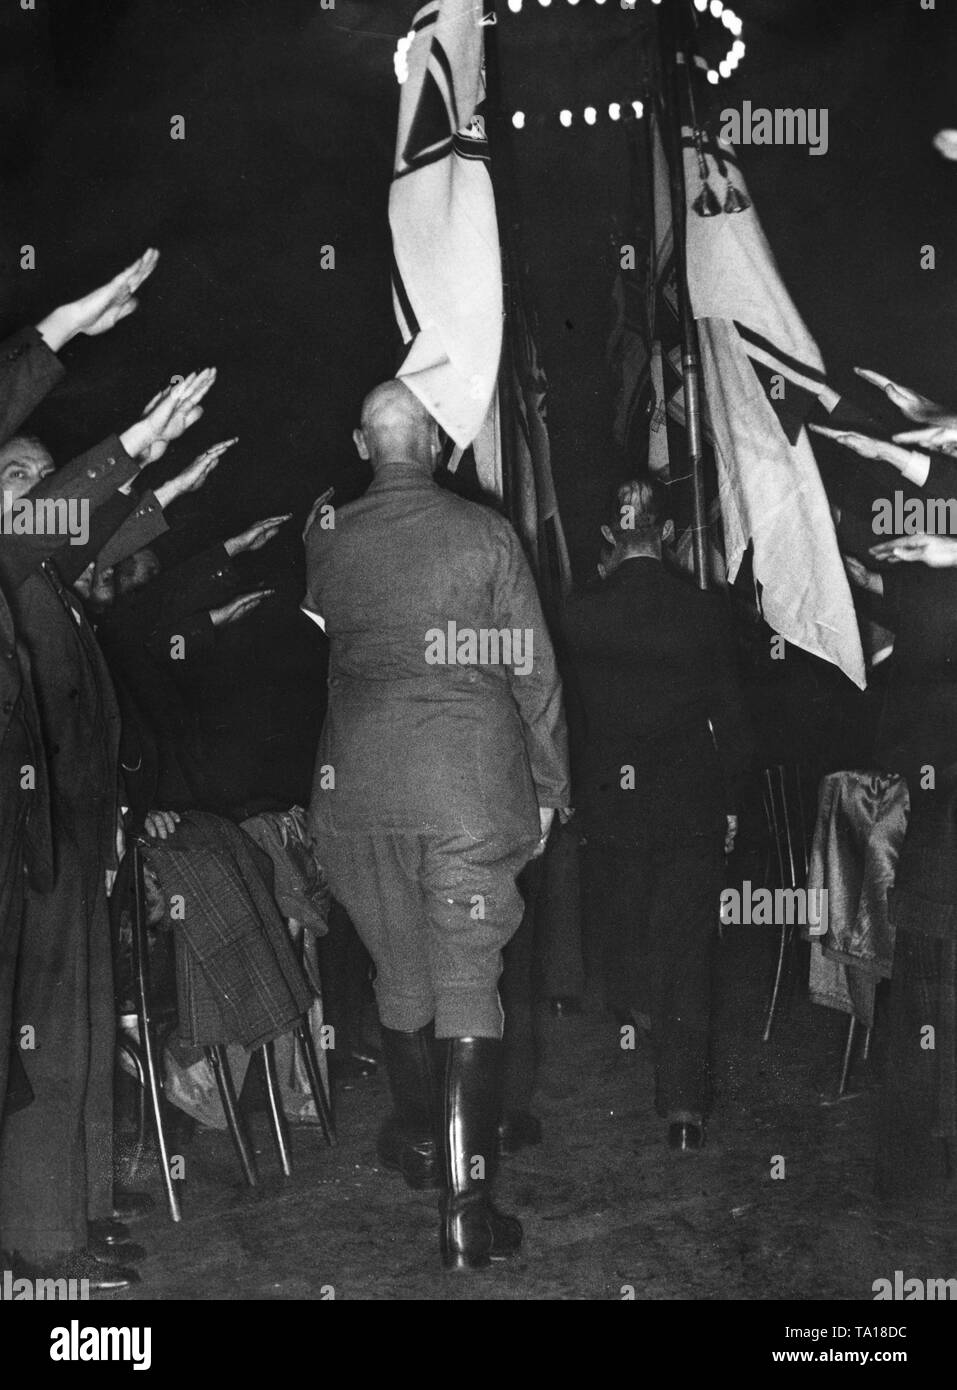 Nach der Auflösung der Stahlhelm, ein letzter Abschied namentliche fand in der Krieger-Vereinshaus. Hier Mitglieder marschieren mit den Flaggen unter den Hitlergruß. Stockfoto